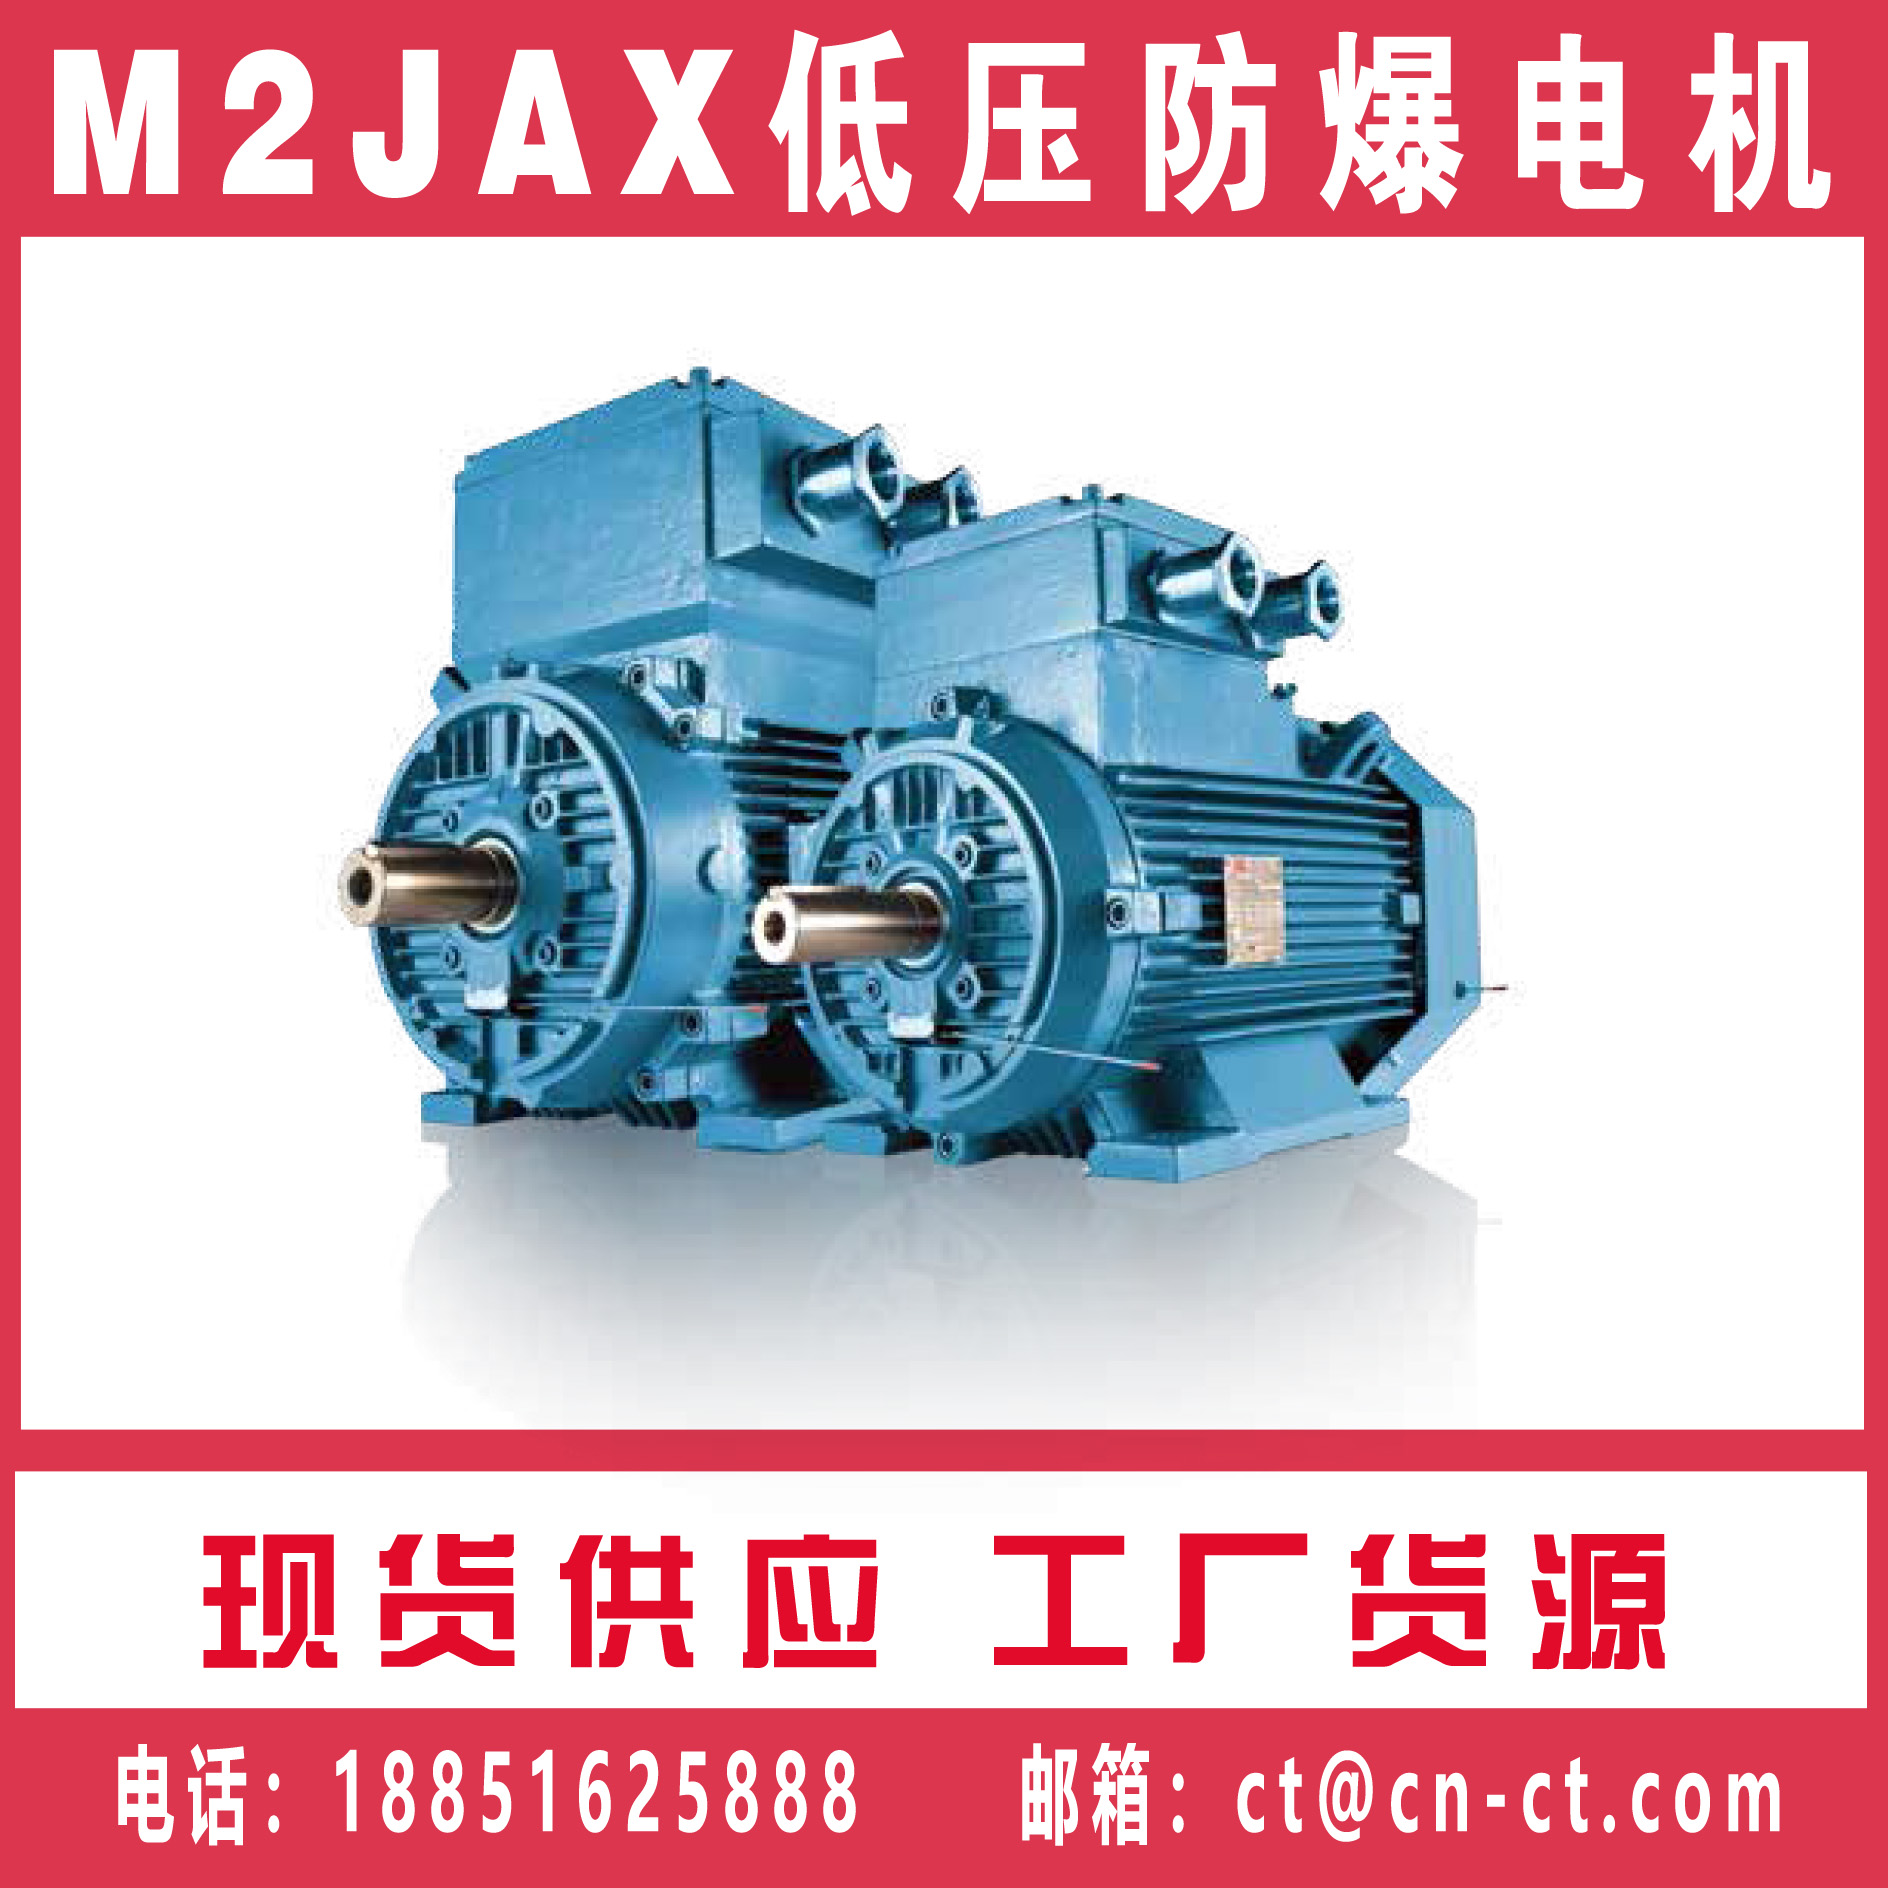 M2JAX低压防爆电机